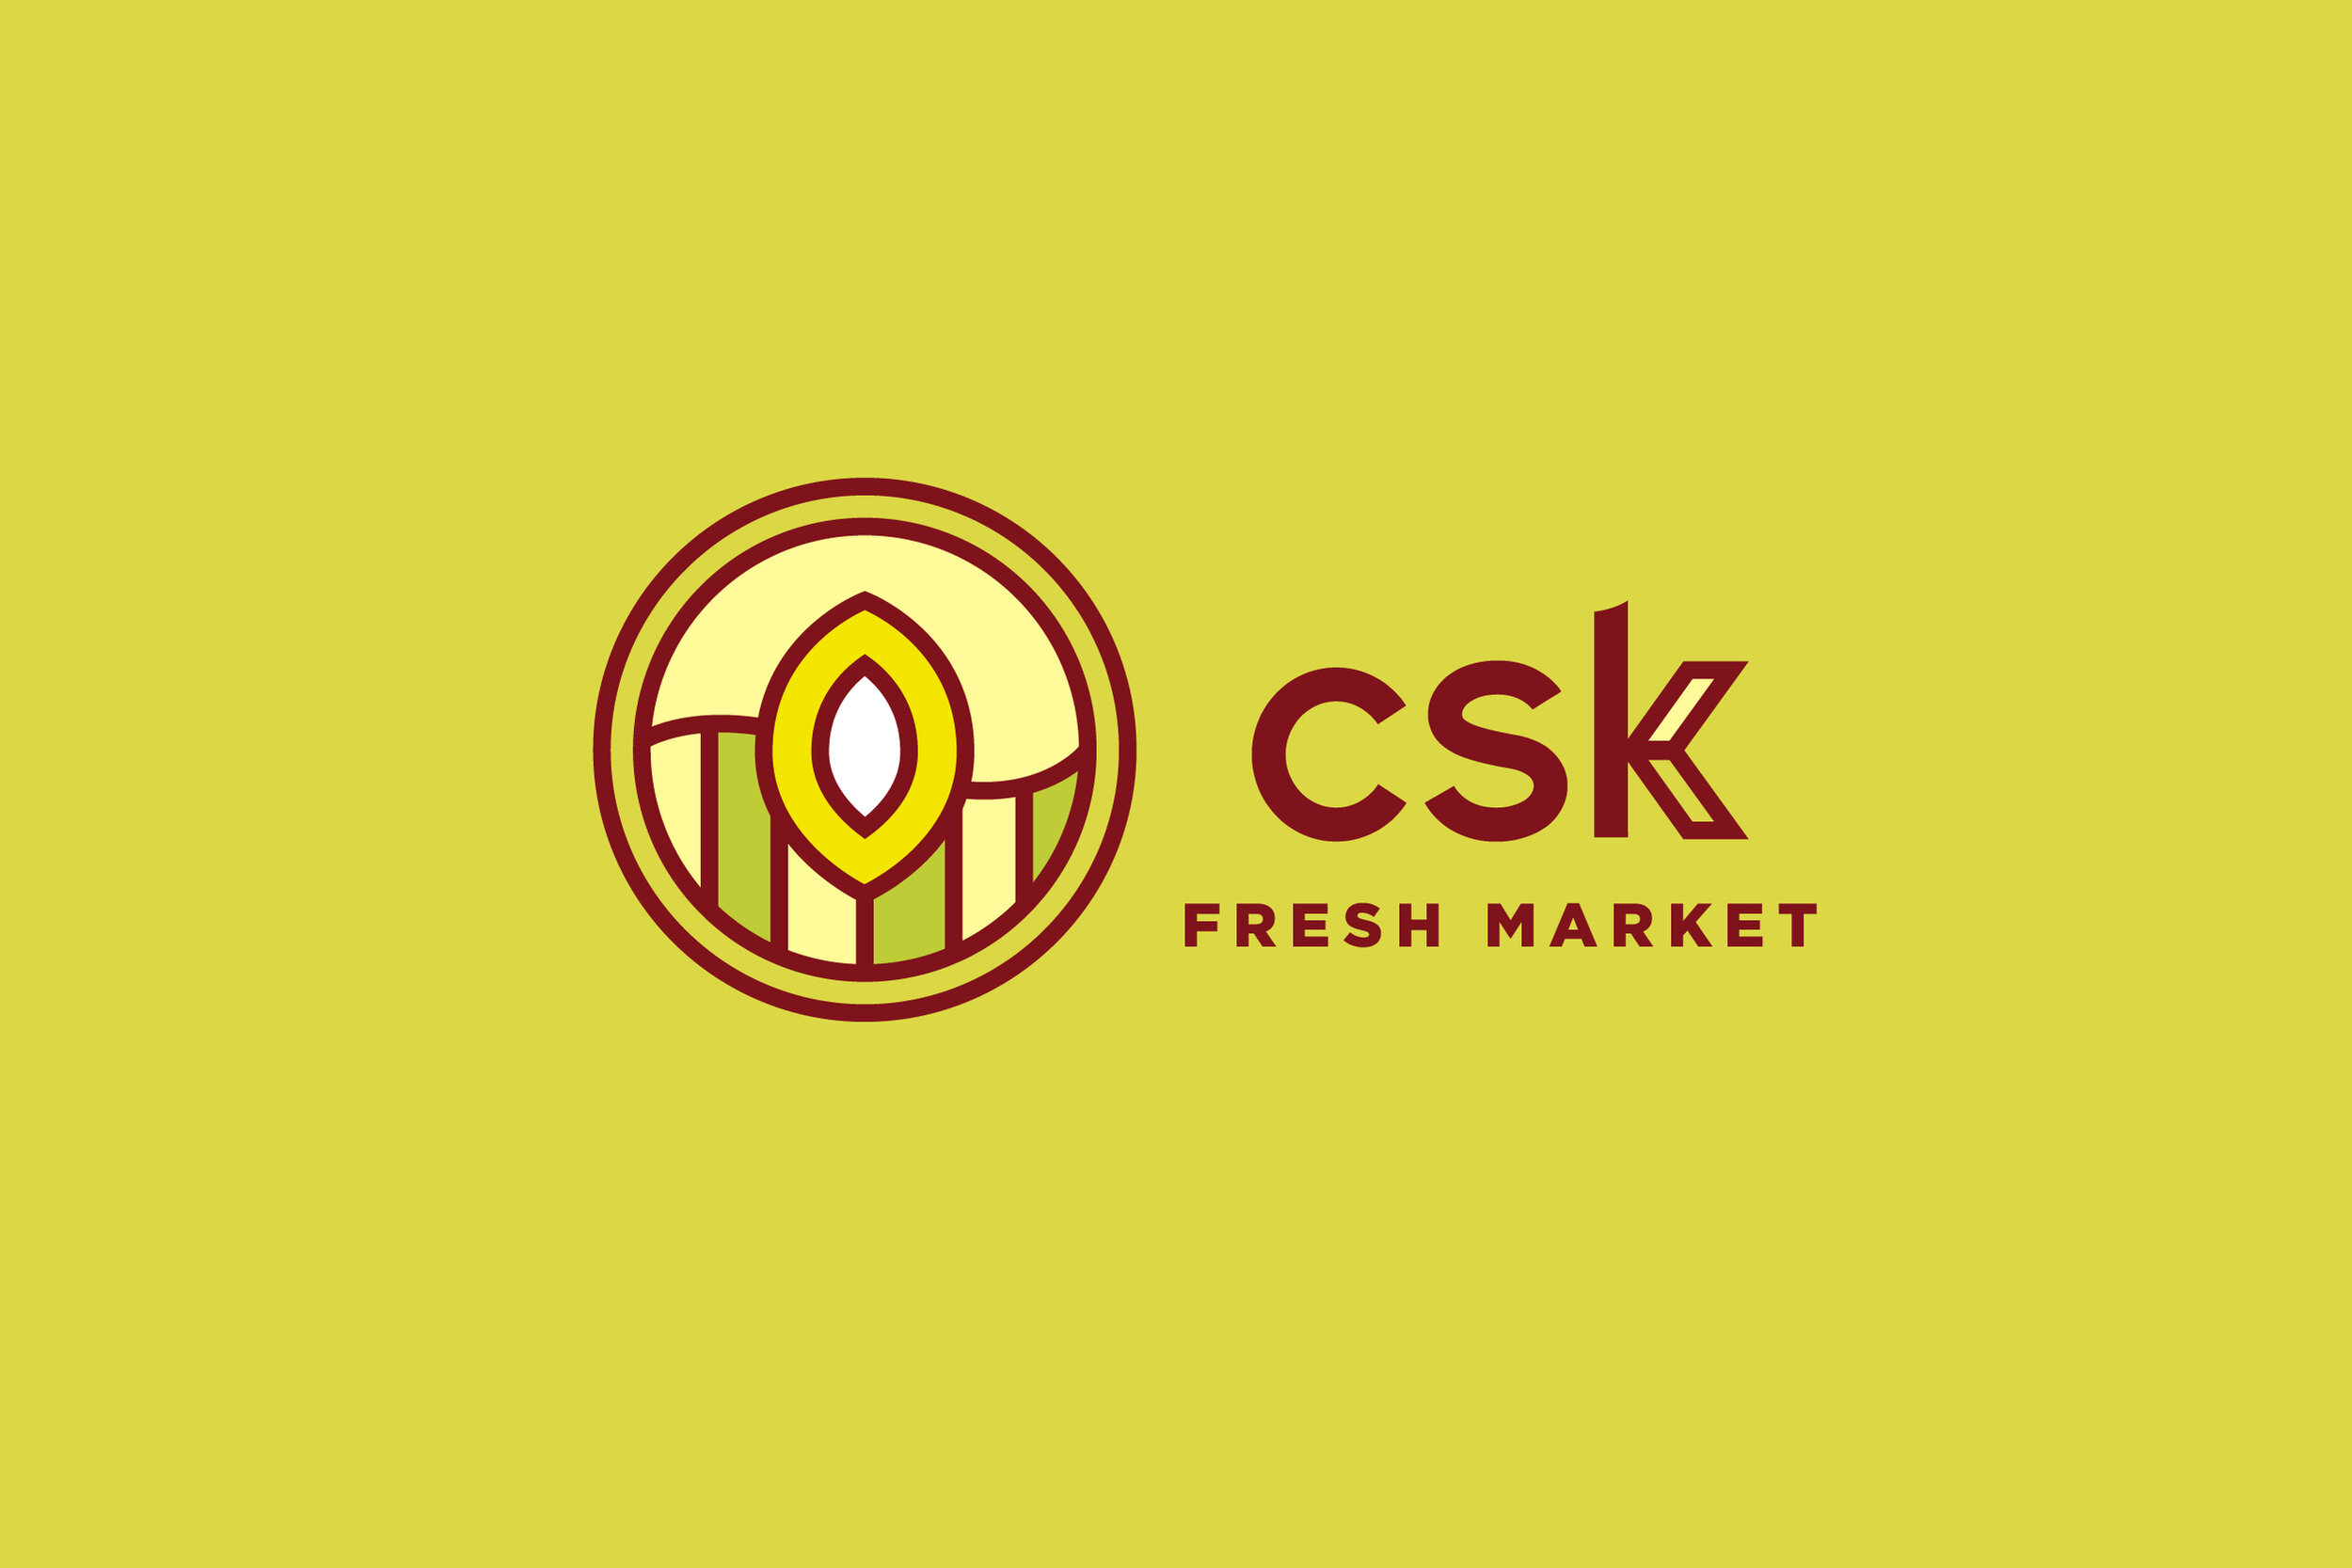 CSK-Outreach-Website-Images_Fresh-Market.jpg